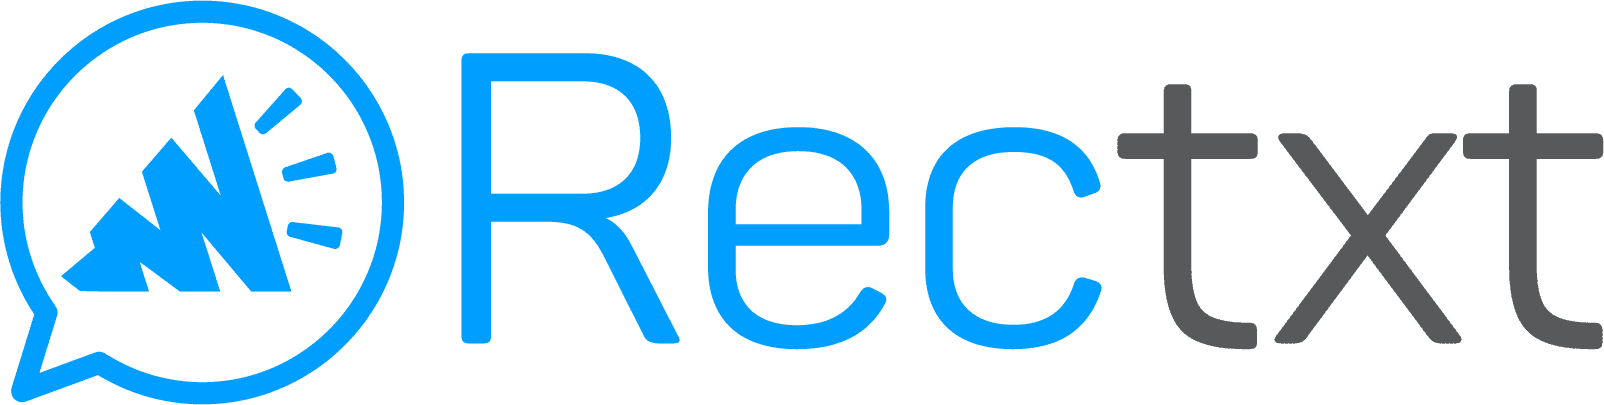 Rectxt logo